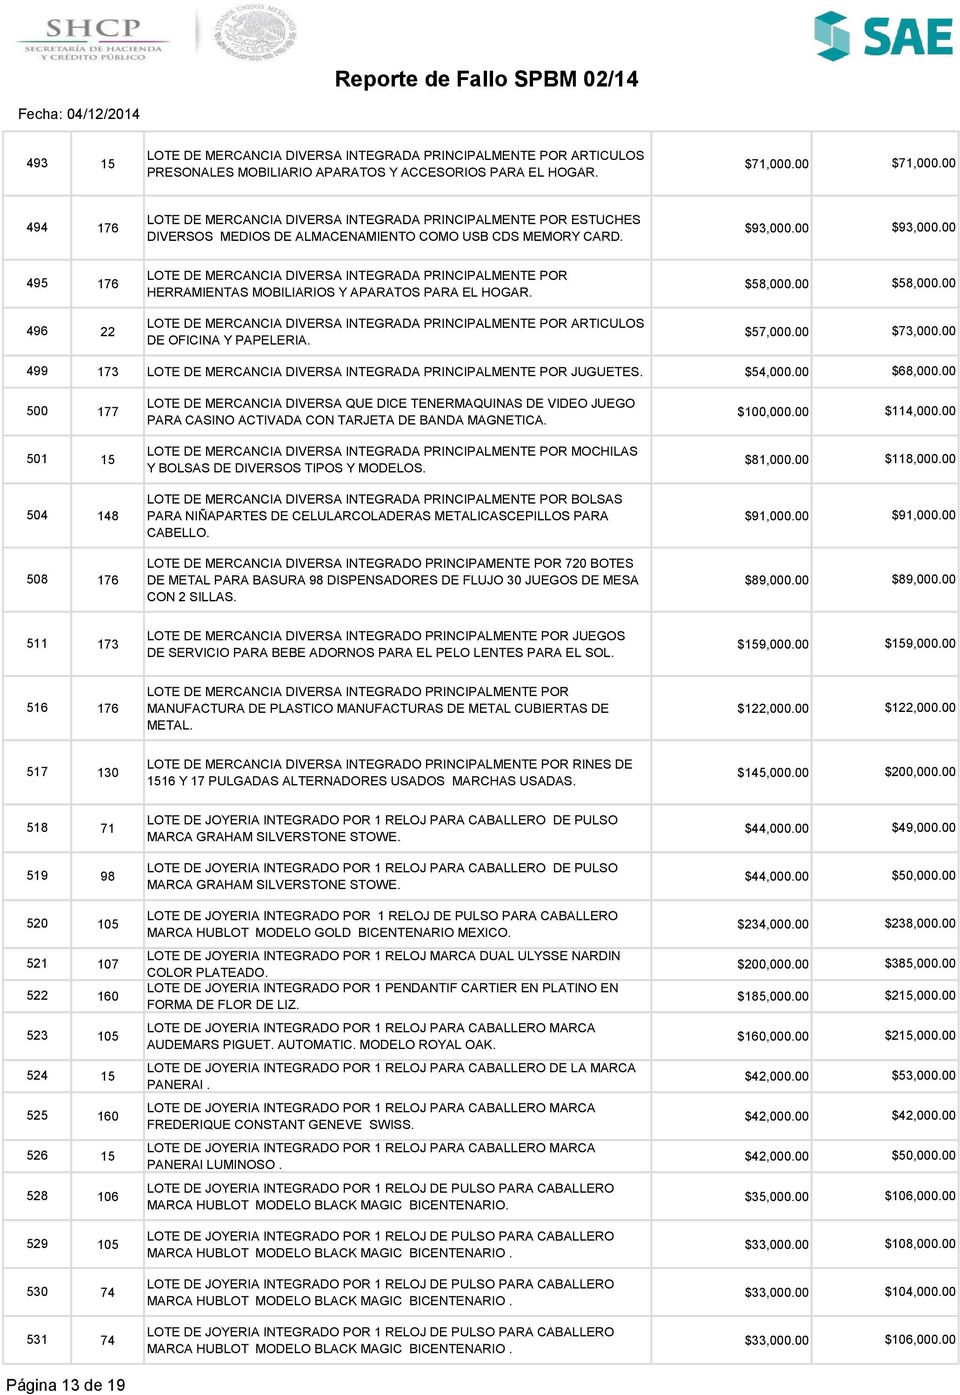 00 500 177 LOTE DE MERCANCIA DIVERSA QUE DICE TENERMAQUINAS DE VIDEO JUEGO PARA CASINO ACTIVADA CON TARJETA DE BANDA MAGNETICA. $114,000.00 501 15 MOCHILAS Y BOLSAS DE DIVERSOS TIPOS $81,000.